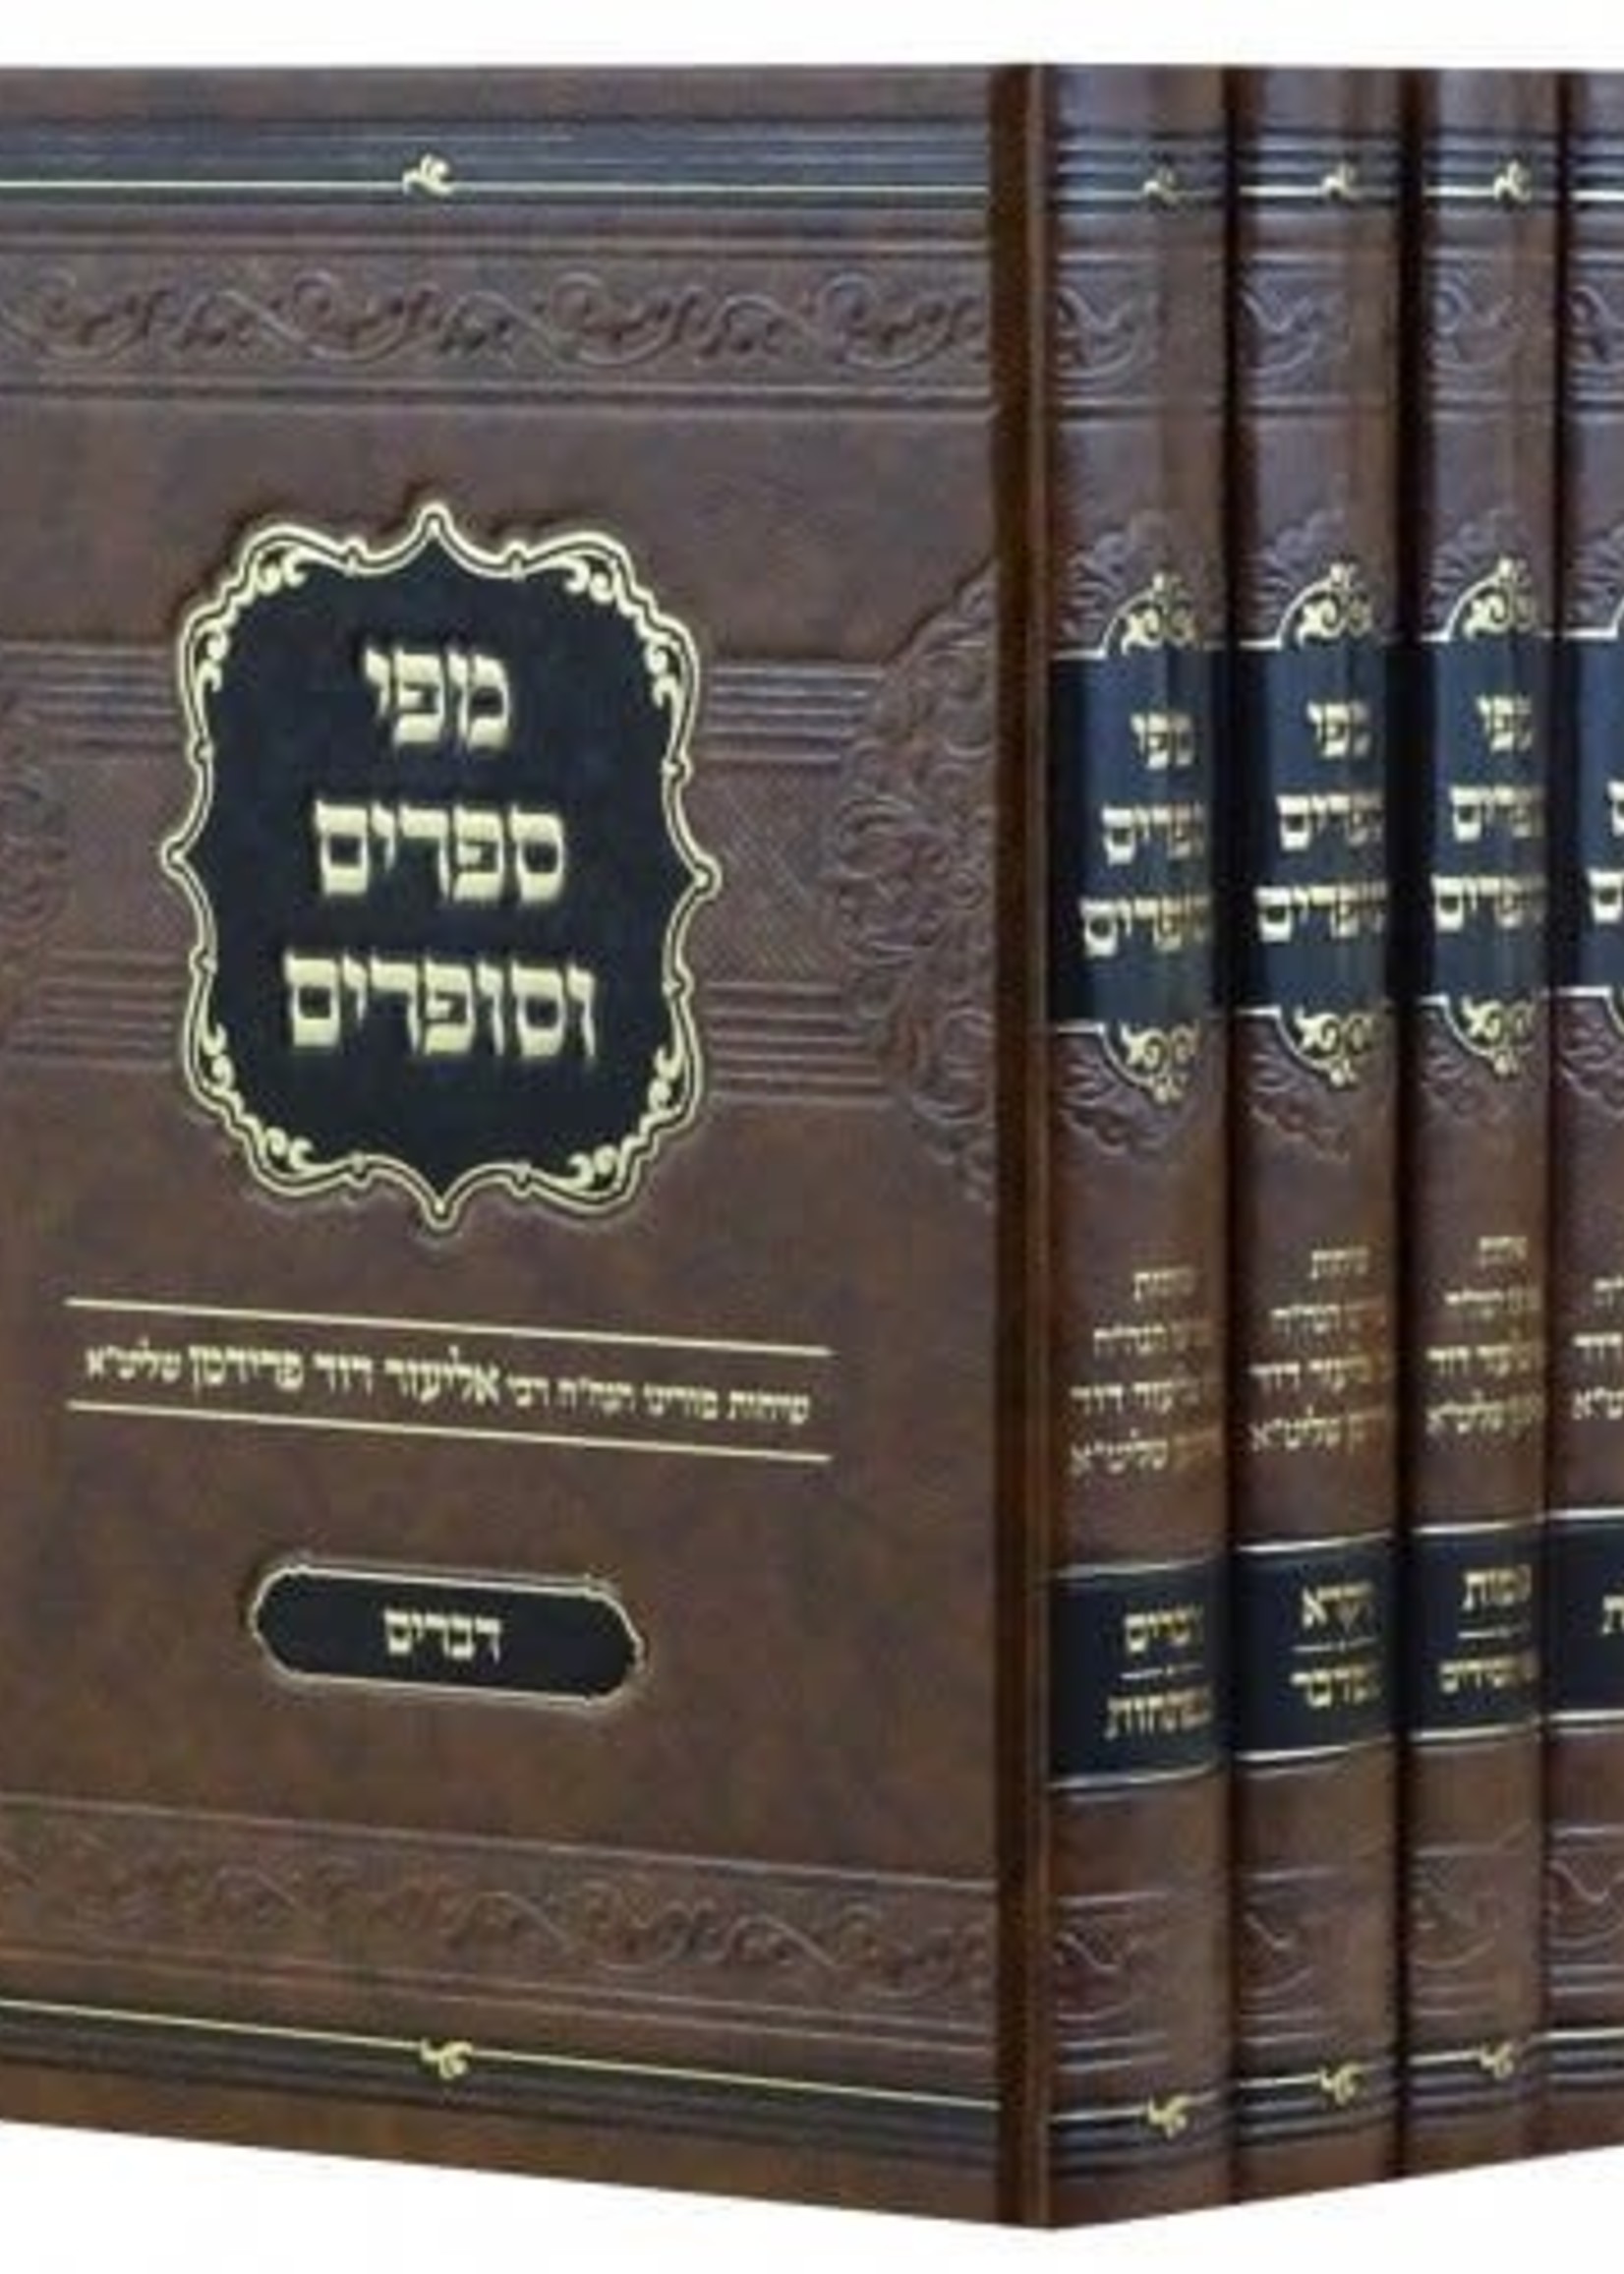 Mipi Seforim V'Sofrim Al Hatorah - 4 Volume Set / מפי ספרים וסופרים על התורה ד' כרכים / ר' אליעזר דוד פרידמן